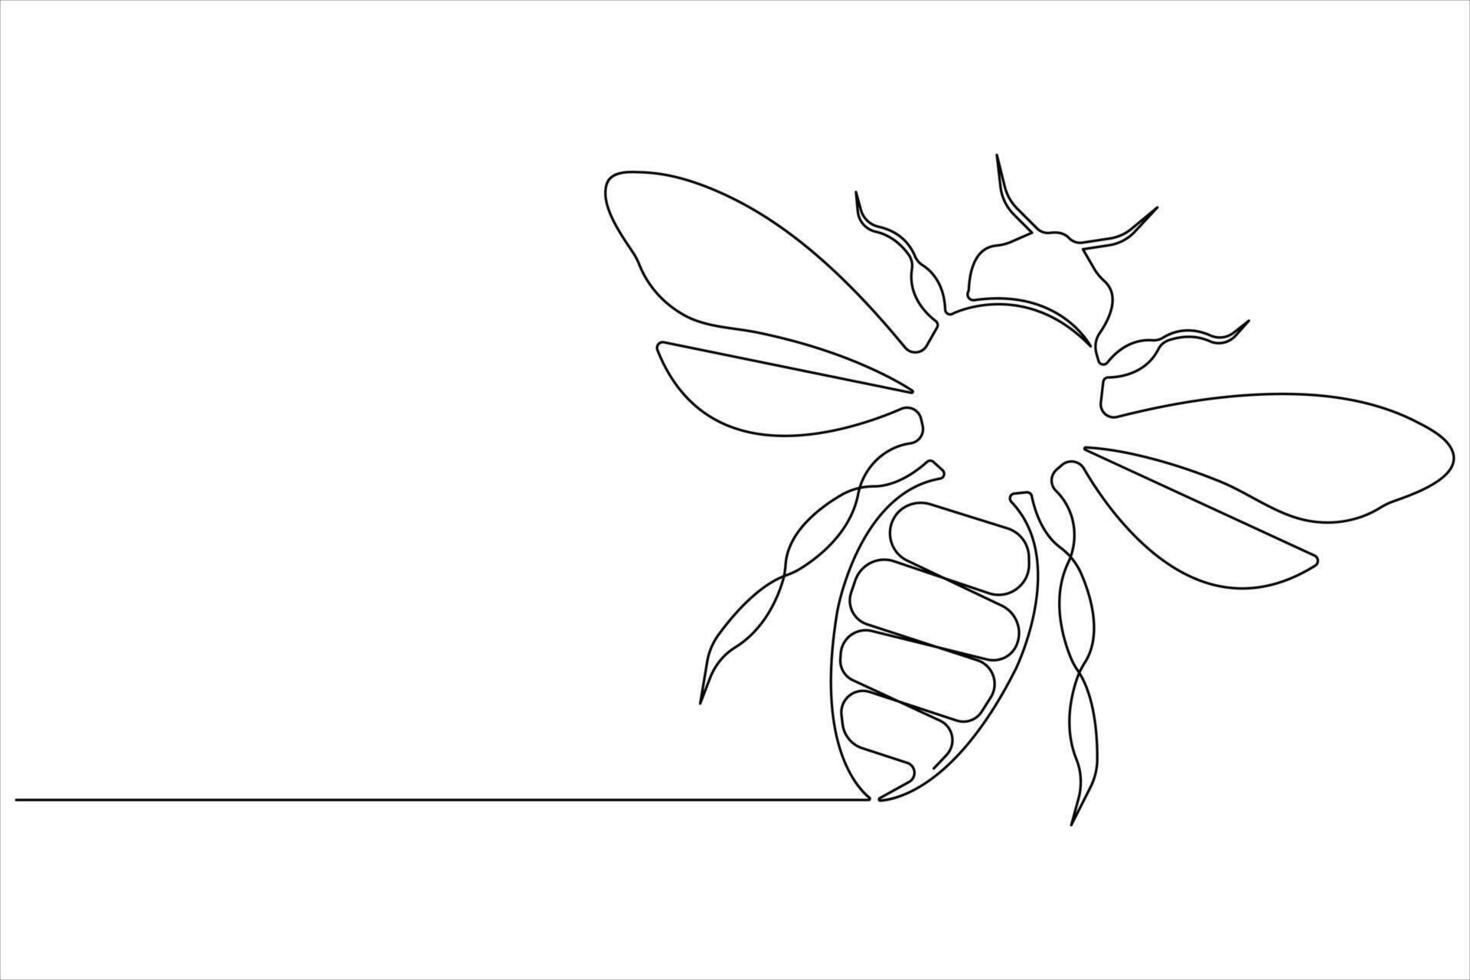 sencillo ilustración de miel abeja forma continuo uno línea Arte abeja contorno vector